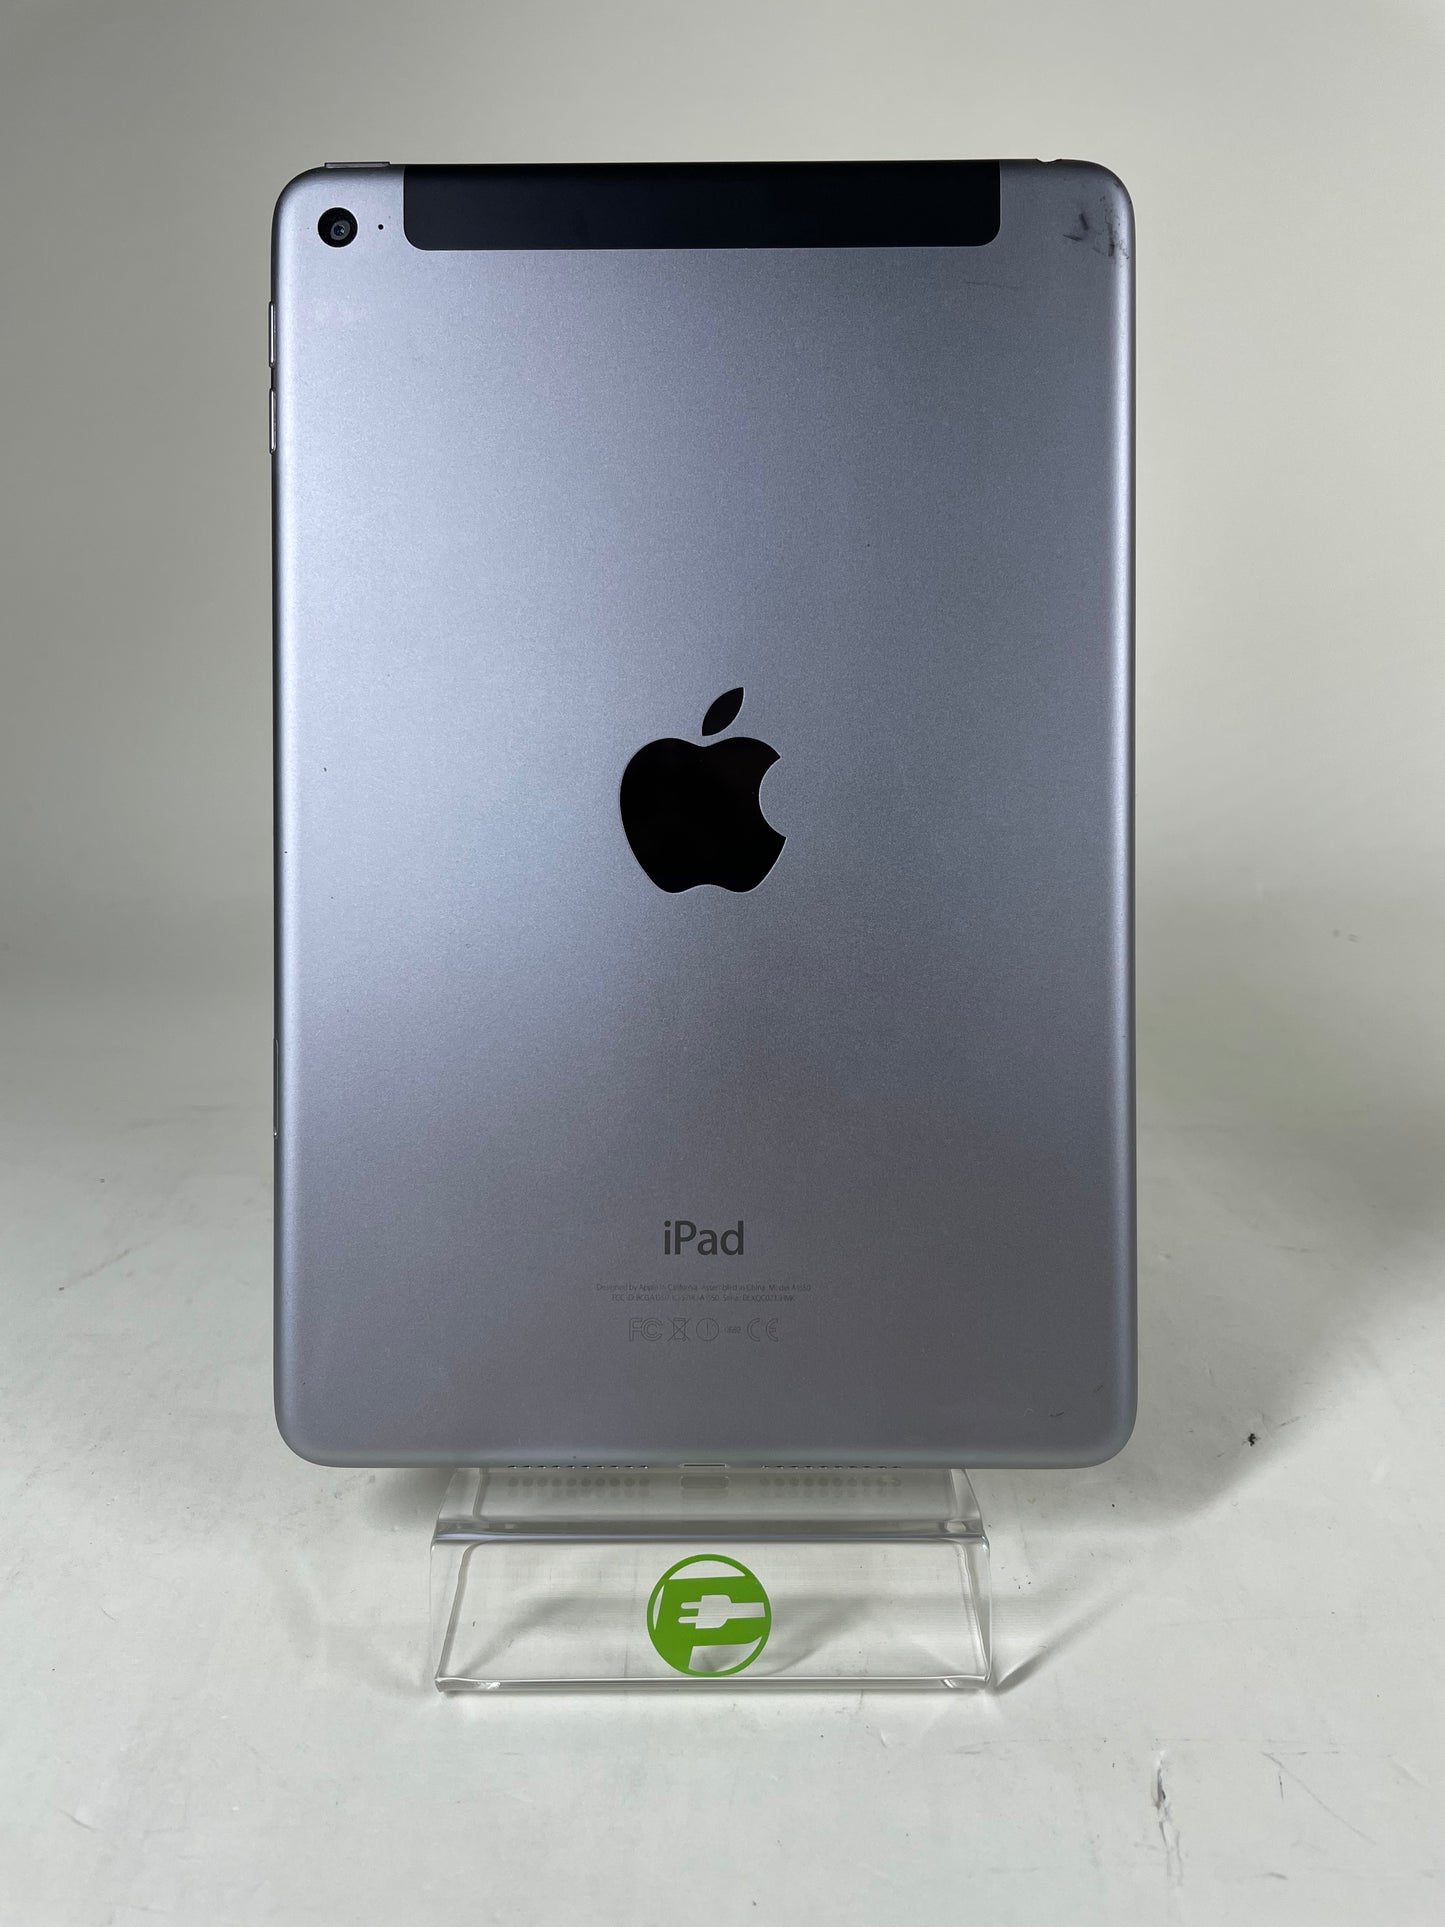 Unlocked Apple iPad Mini 4th Gen 64GB other11.3.1 Space Gray MK802LL/A